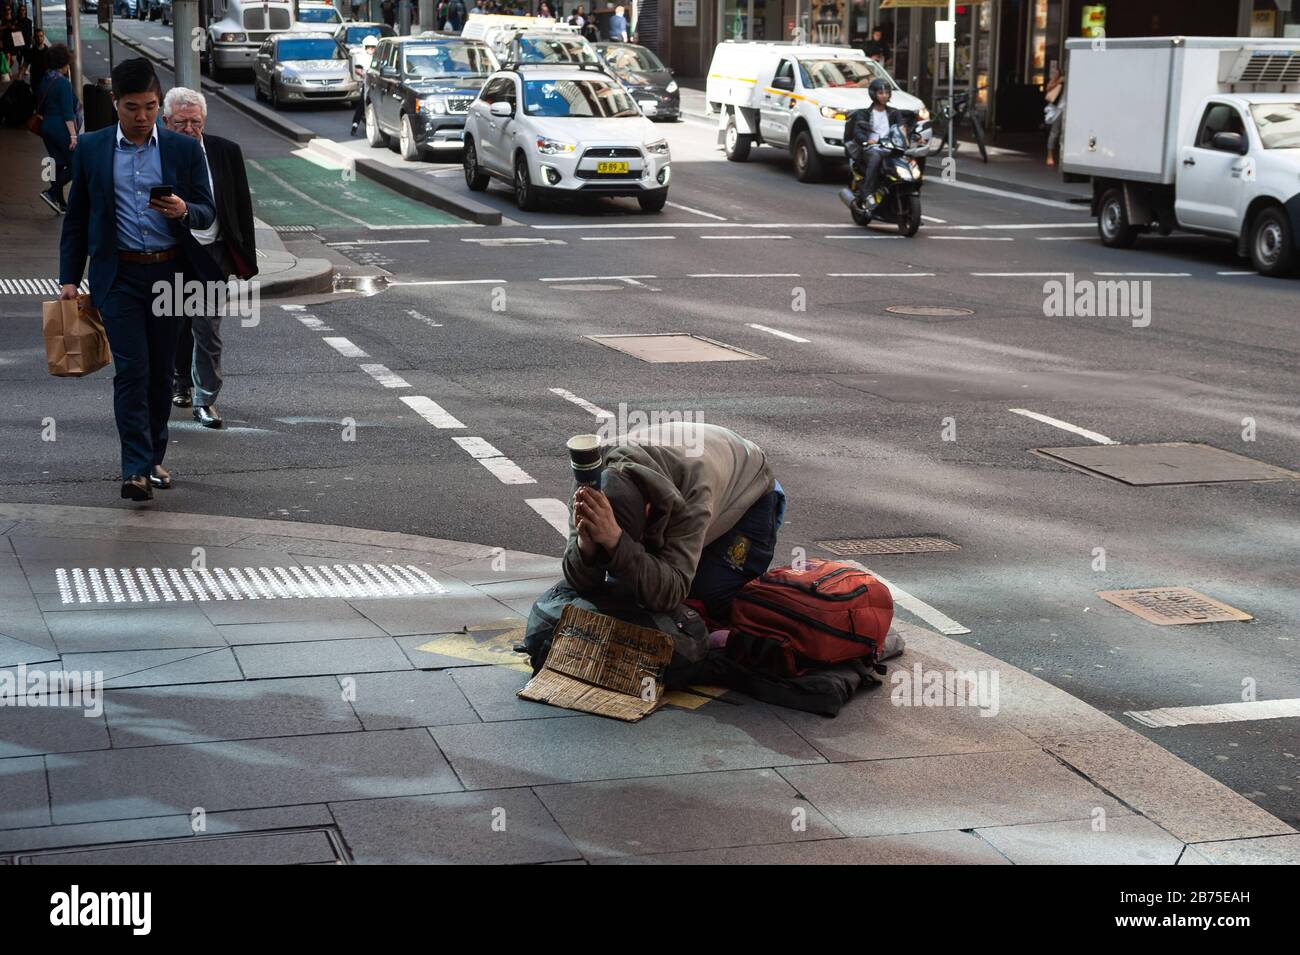 19.09.2018, Sydney, New South Wales, Australien - EIN Obdachloser kniet auf einem Gehweg in der Innenstadt von Sydney und bittet um eine Geldspende. [Automatisierte Übersetzung] Stockfoto